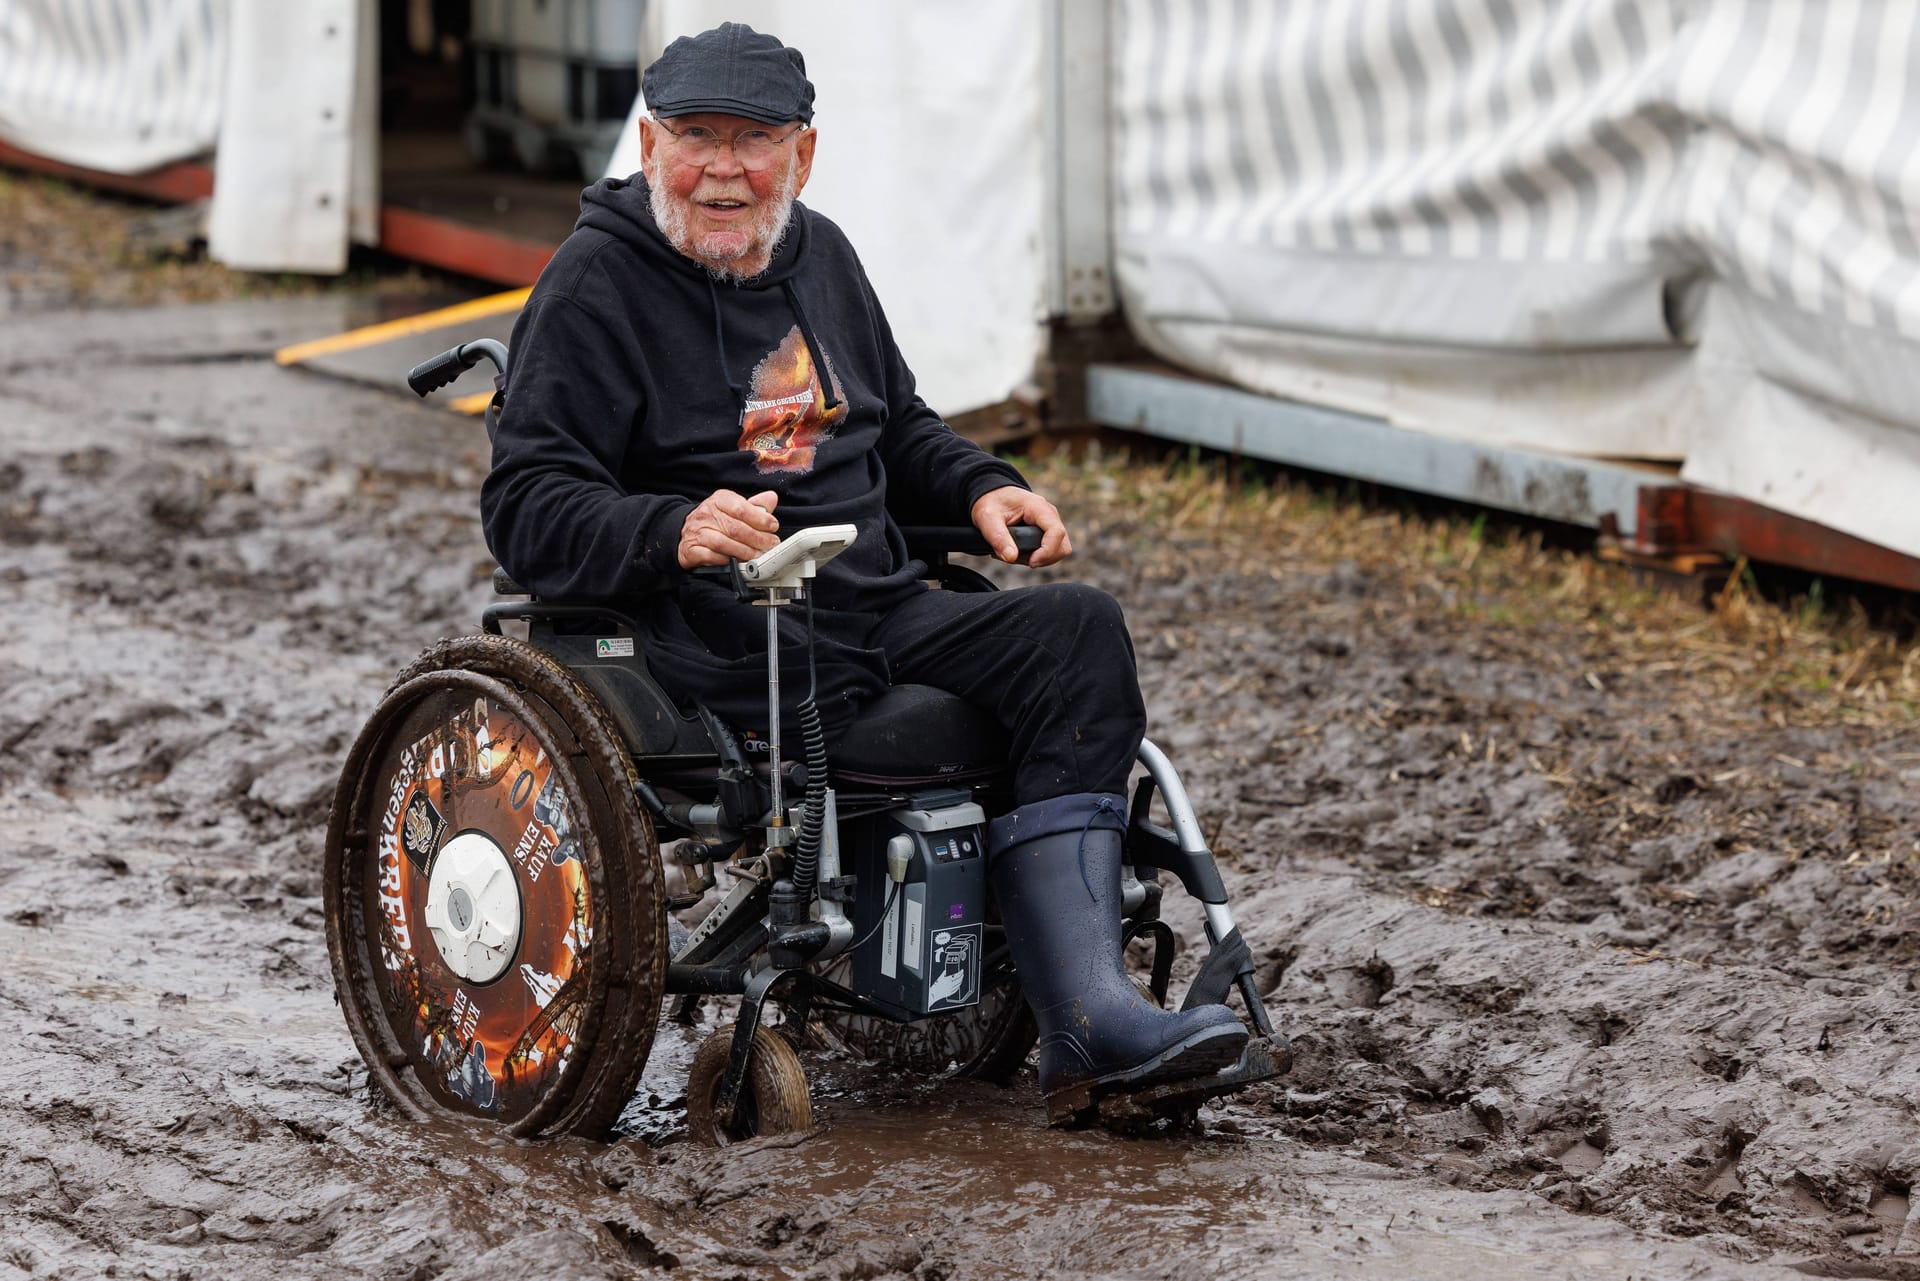 Auch der bekannte Wacken Opa Günter, der für seine Charity Organisation Lautstark gegen den Krebs sammelt lässt sich trotz Rollstuhl nicht vom Matsch aufhalten.